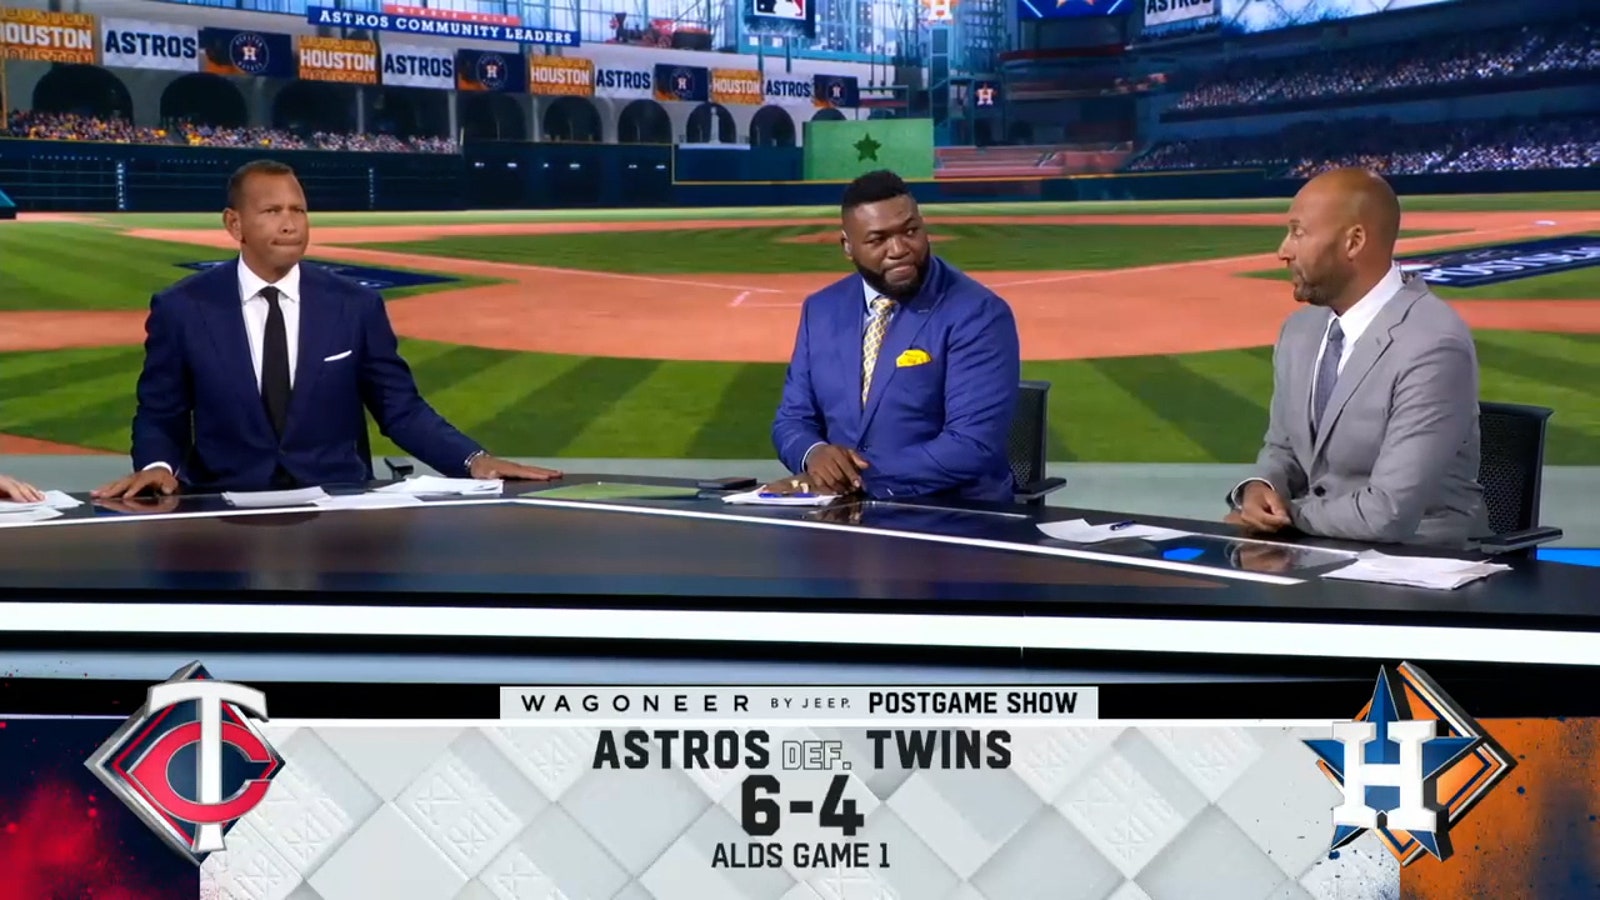 Derek Jeter, Alex Rodriguez & David Ortiz discuss Astros' G1 win over Twins